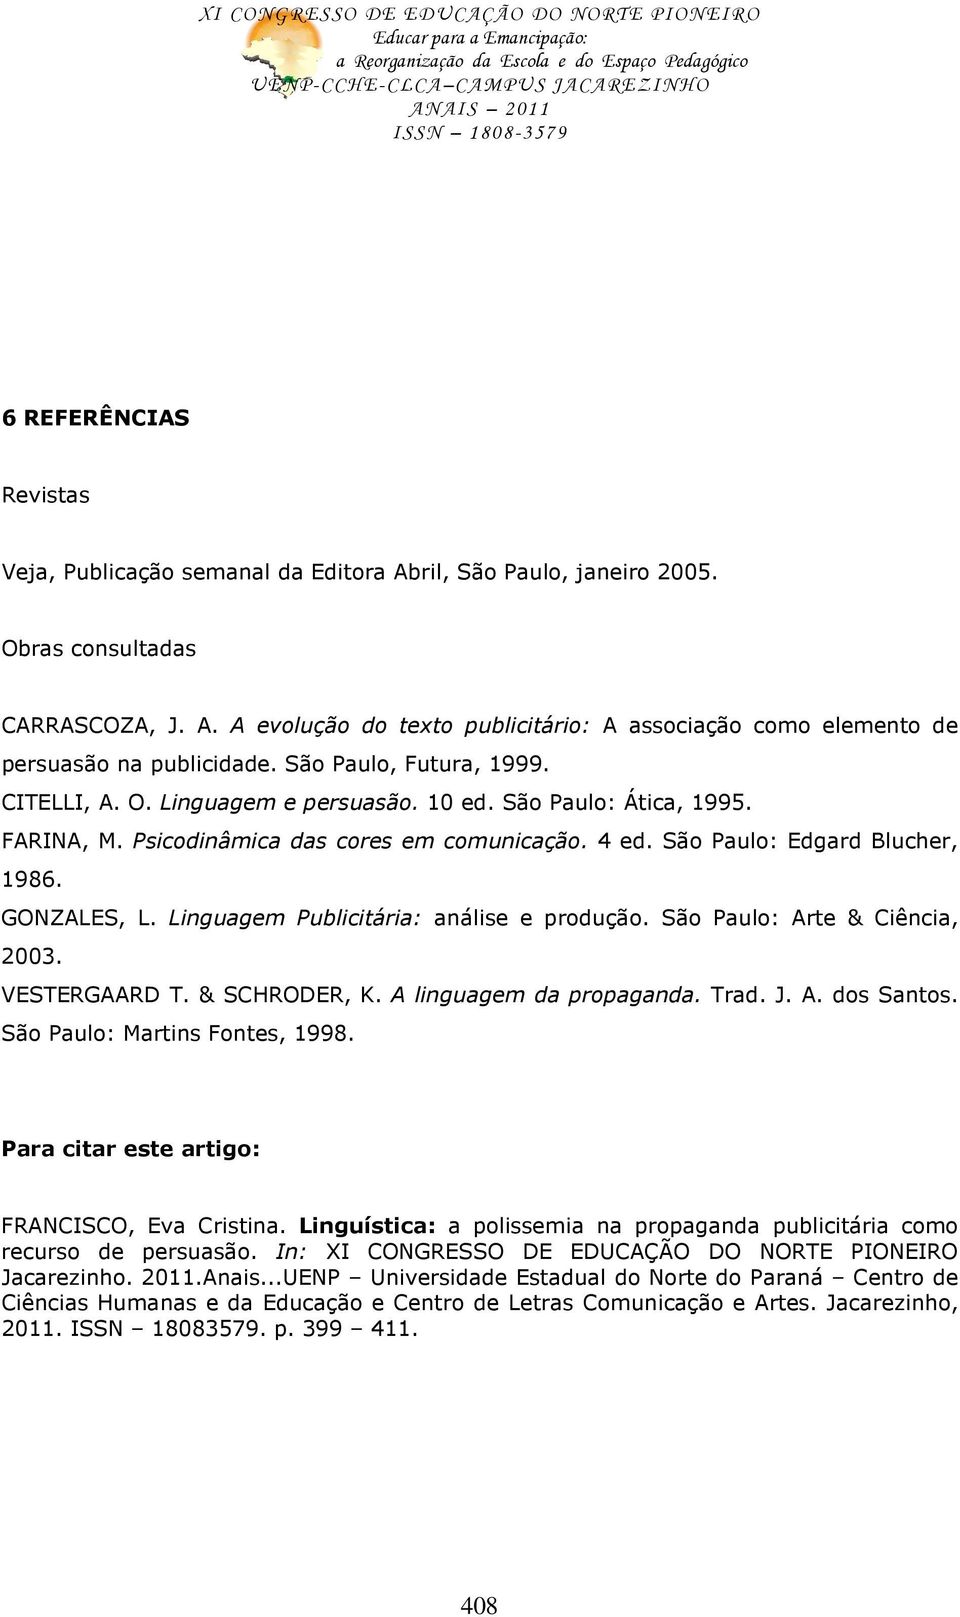 Linguagem Publicitária: análise e produção. São Paulo: Arte & Ciência, 2003. VESTERGAARD T. & SCHRODER, K. A linguagem da propaganda. Trad. J. A. dos Santos. São Paulo: Martins Fontes, 1998.